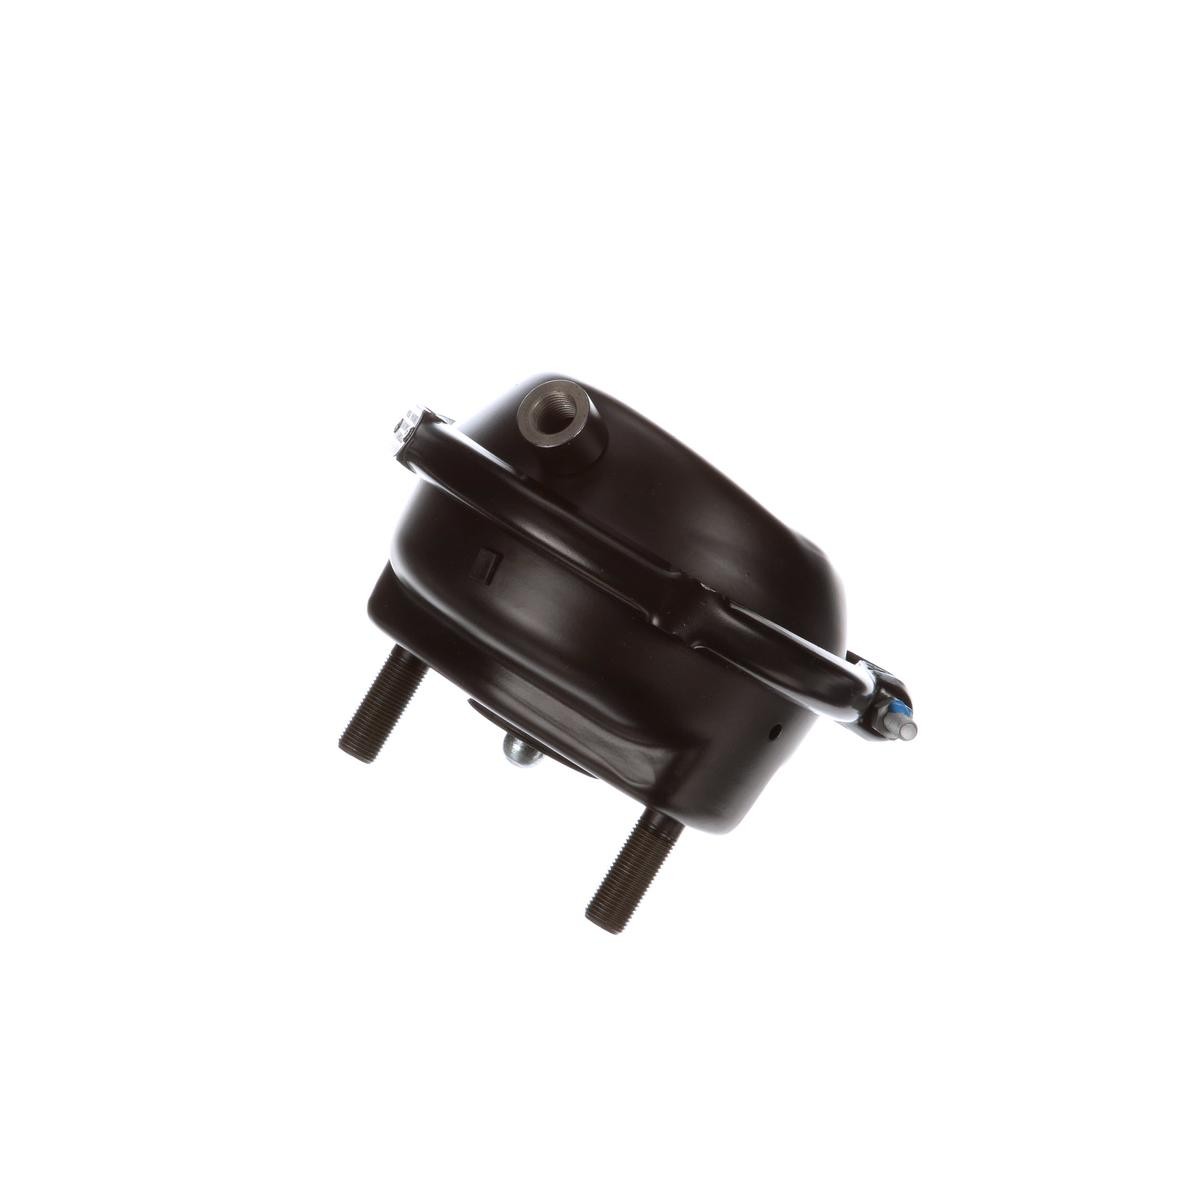 KNORR-BREMSE Diaphragm Brake Cylinder II30618 buy